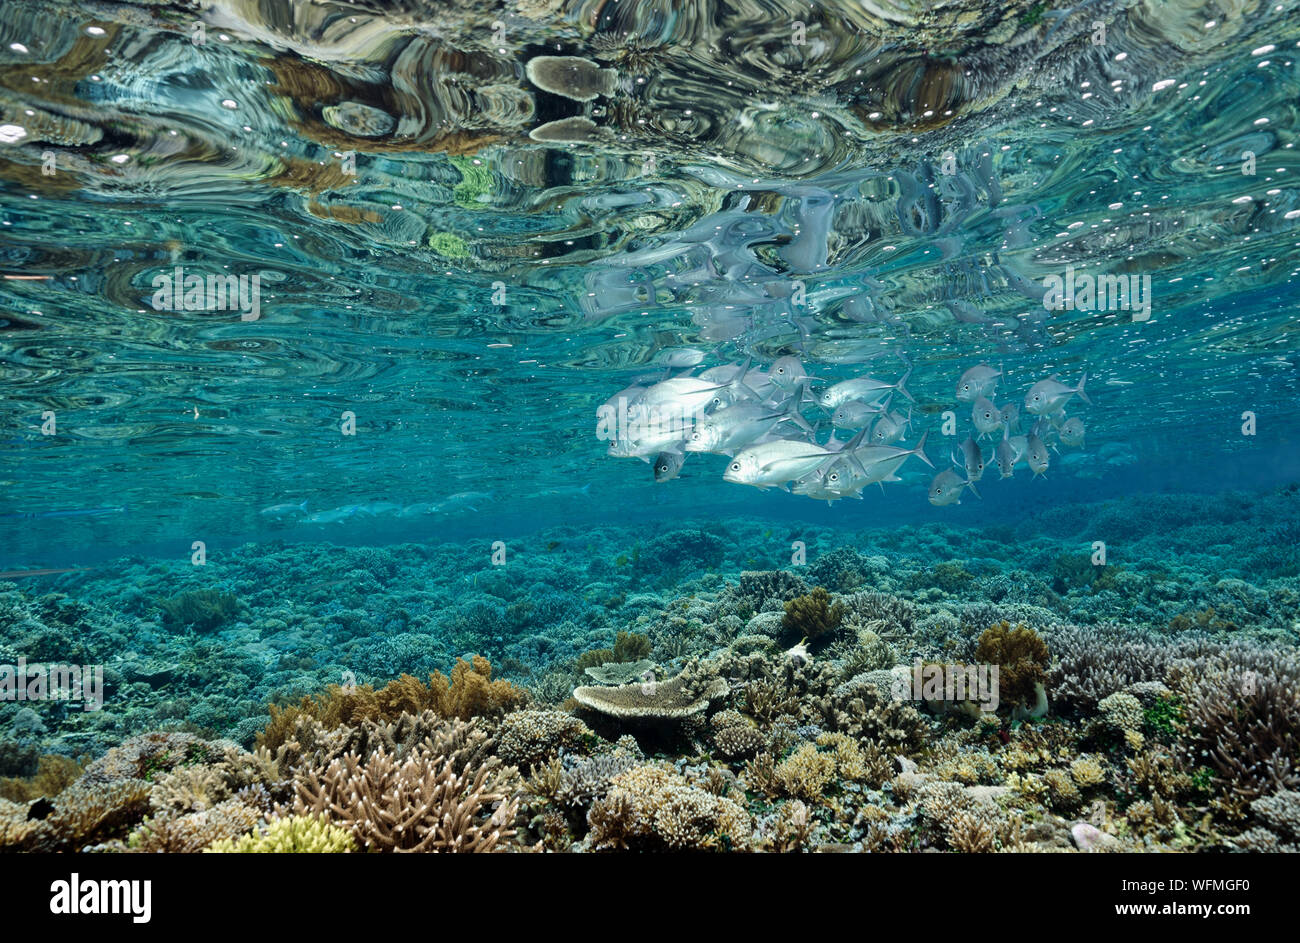 Scenic con arrecifes prístinos Acropora corales duros y patudo trvallies, Caranx sexfasciatus, Raja Ampat Indonesia. Foto de stock